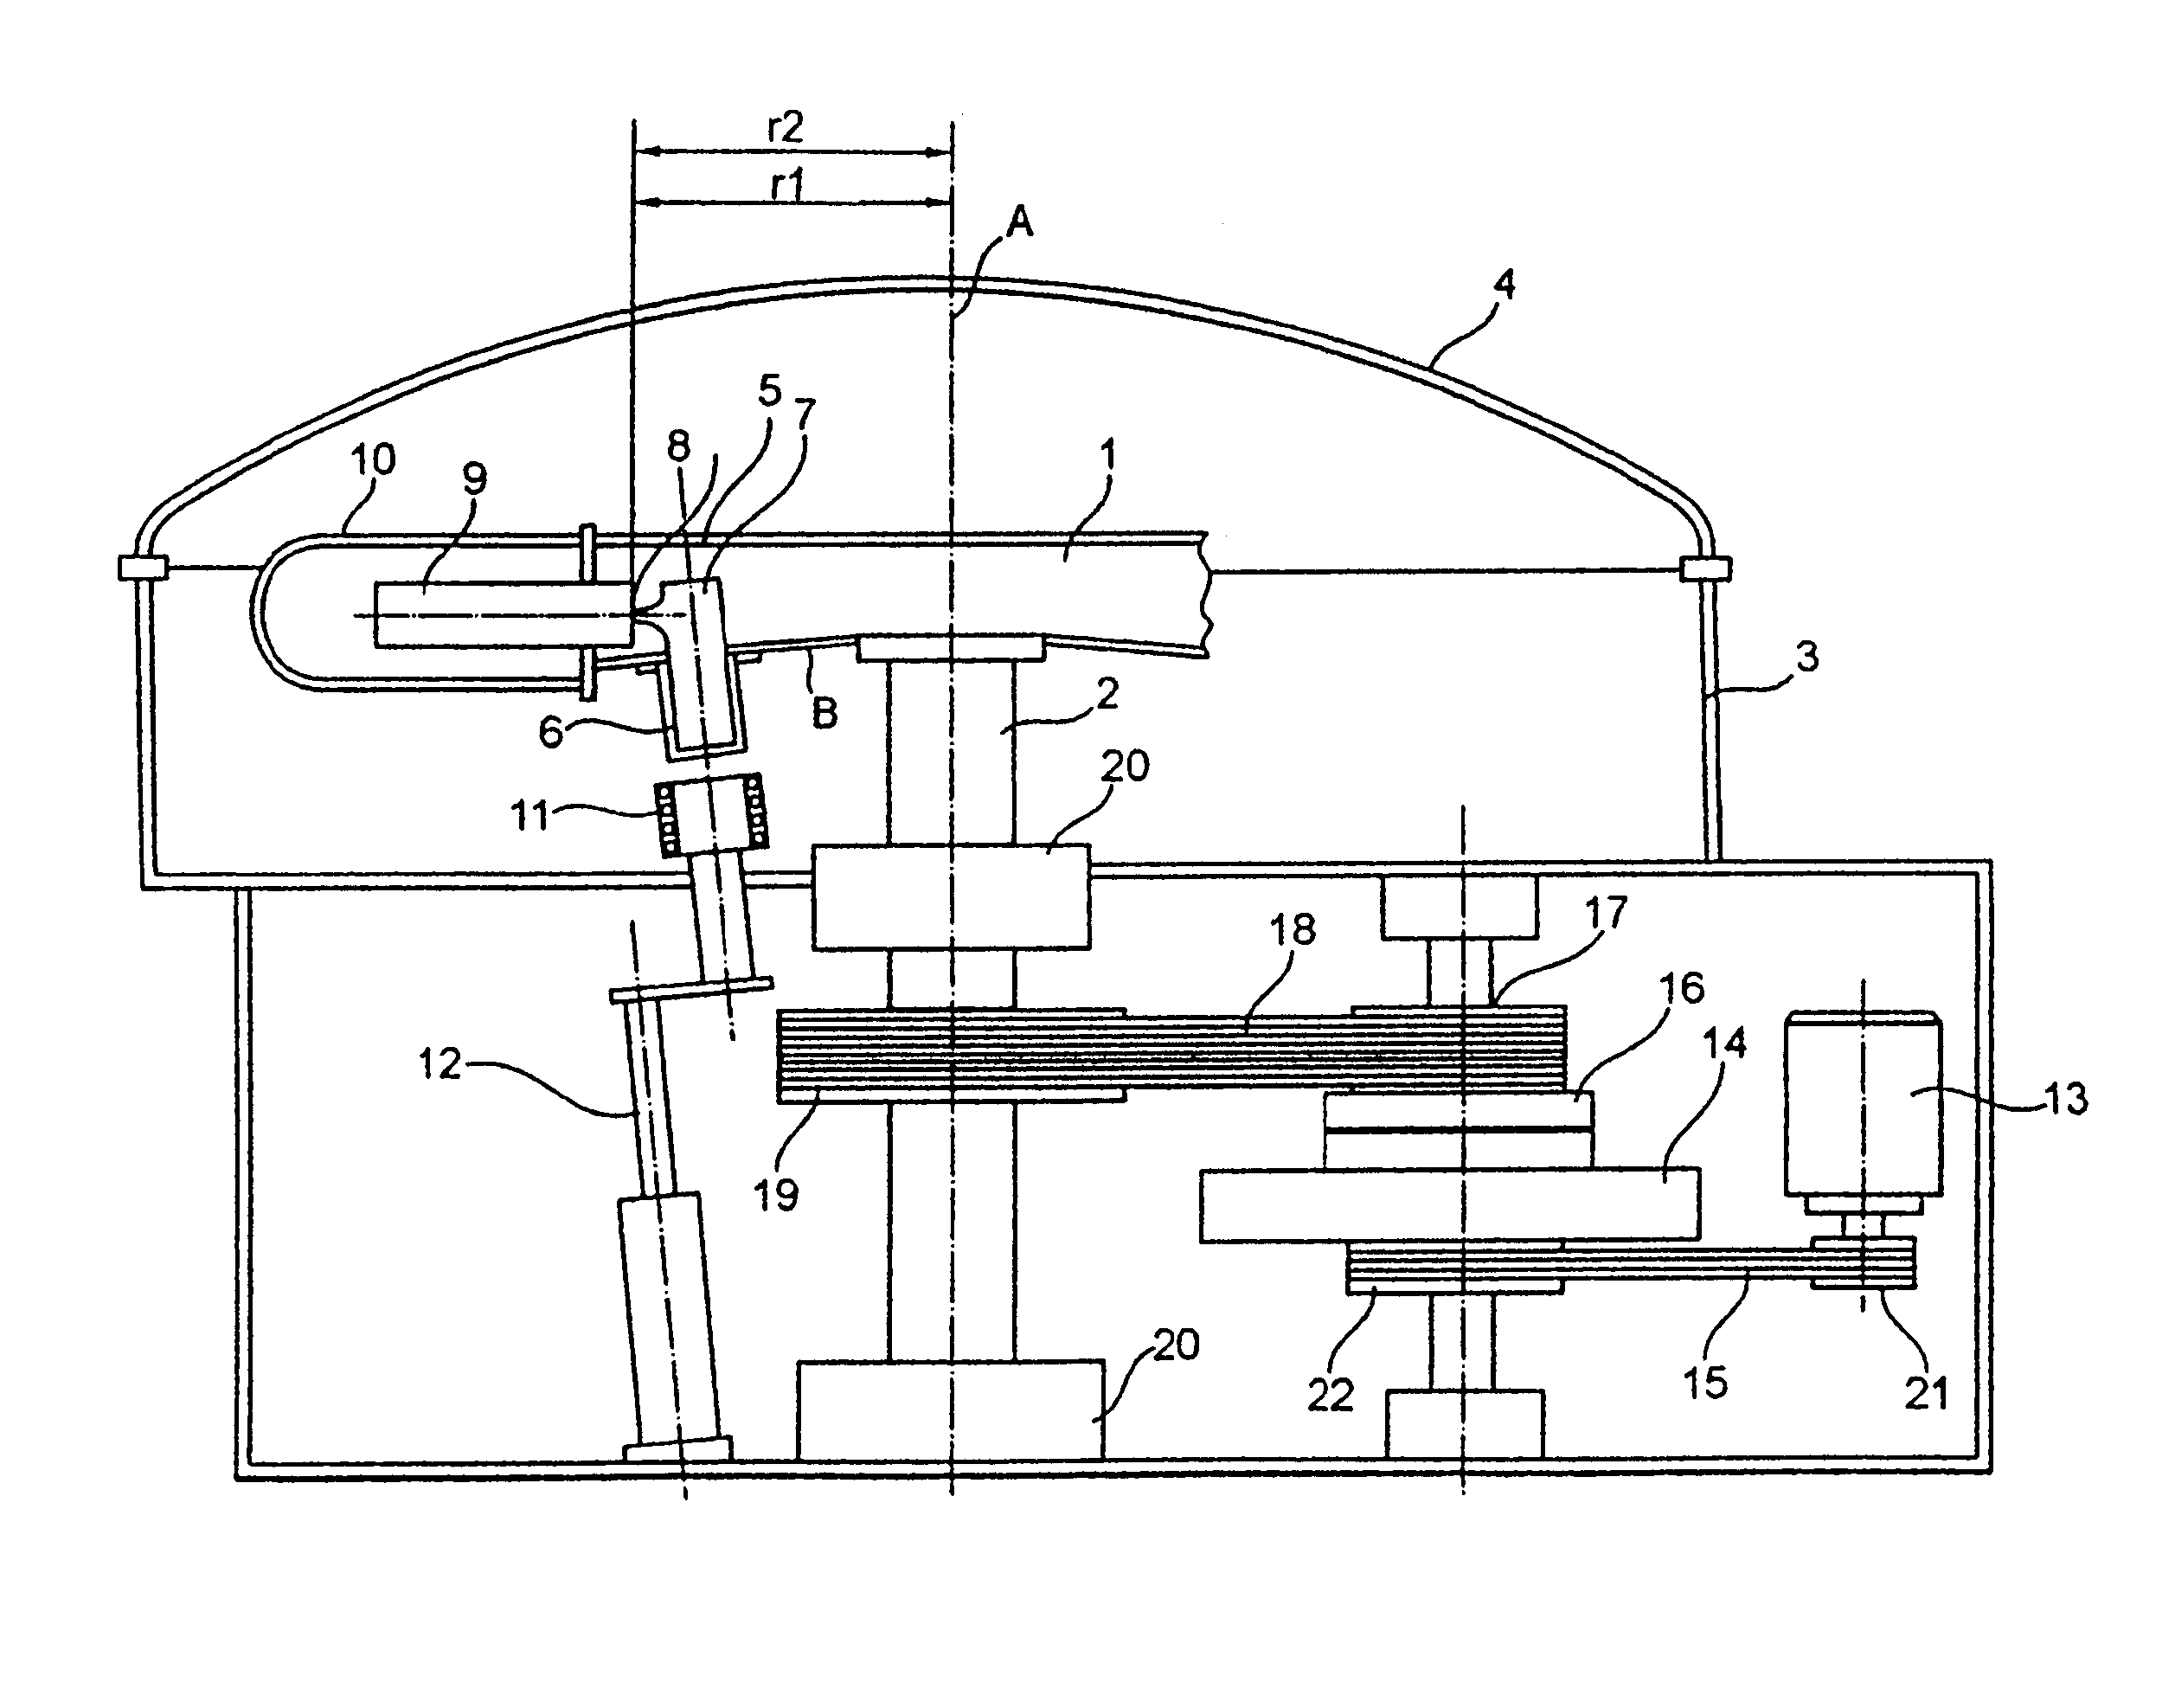 Apparatus for centrifugal casting under vacuum